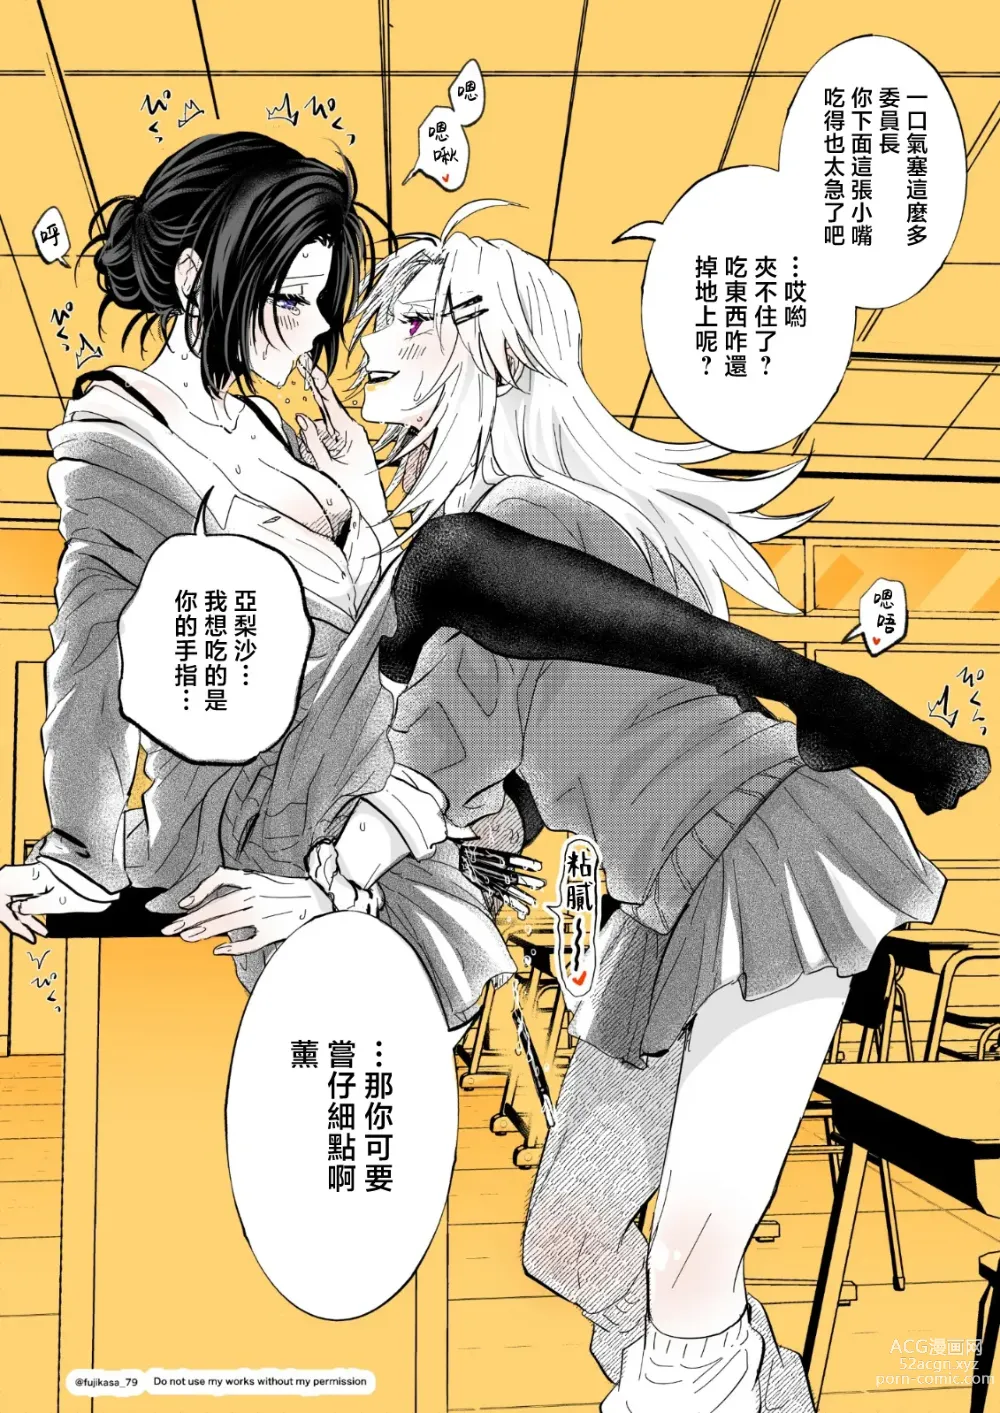 Page 5 of manga 不良少女与委员长关系不好全是演戏